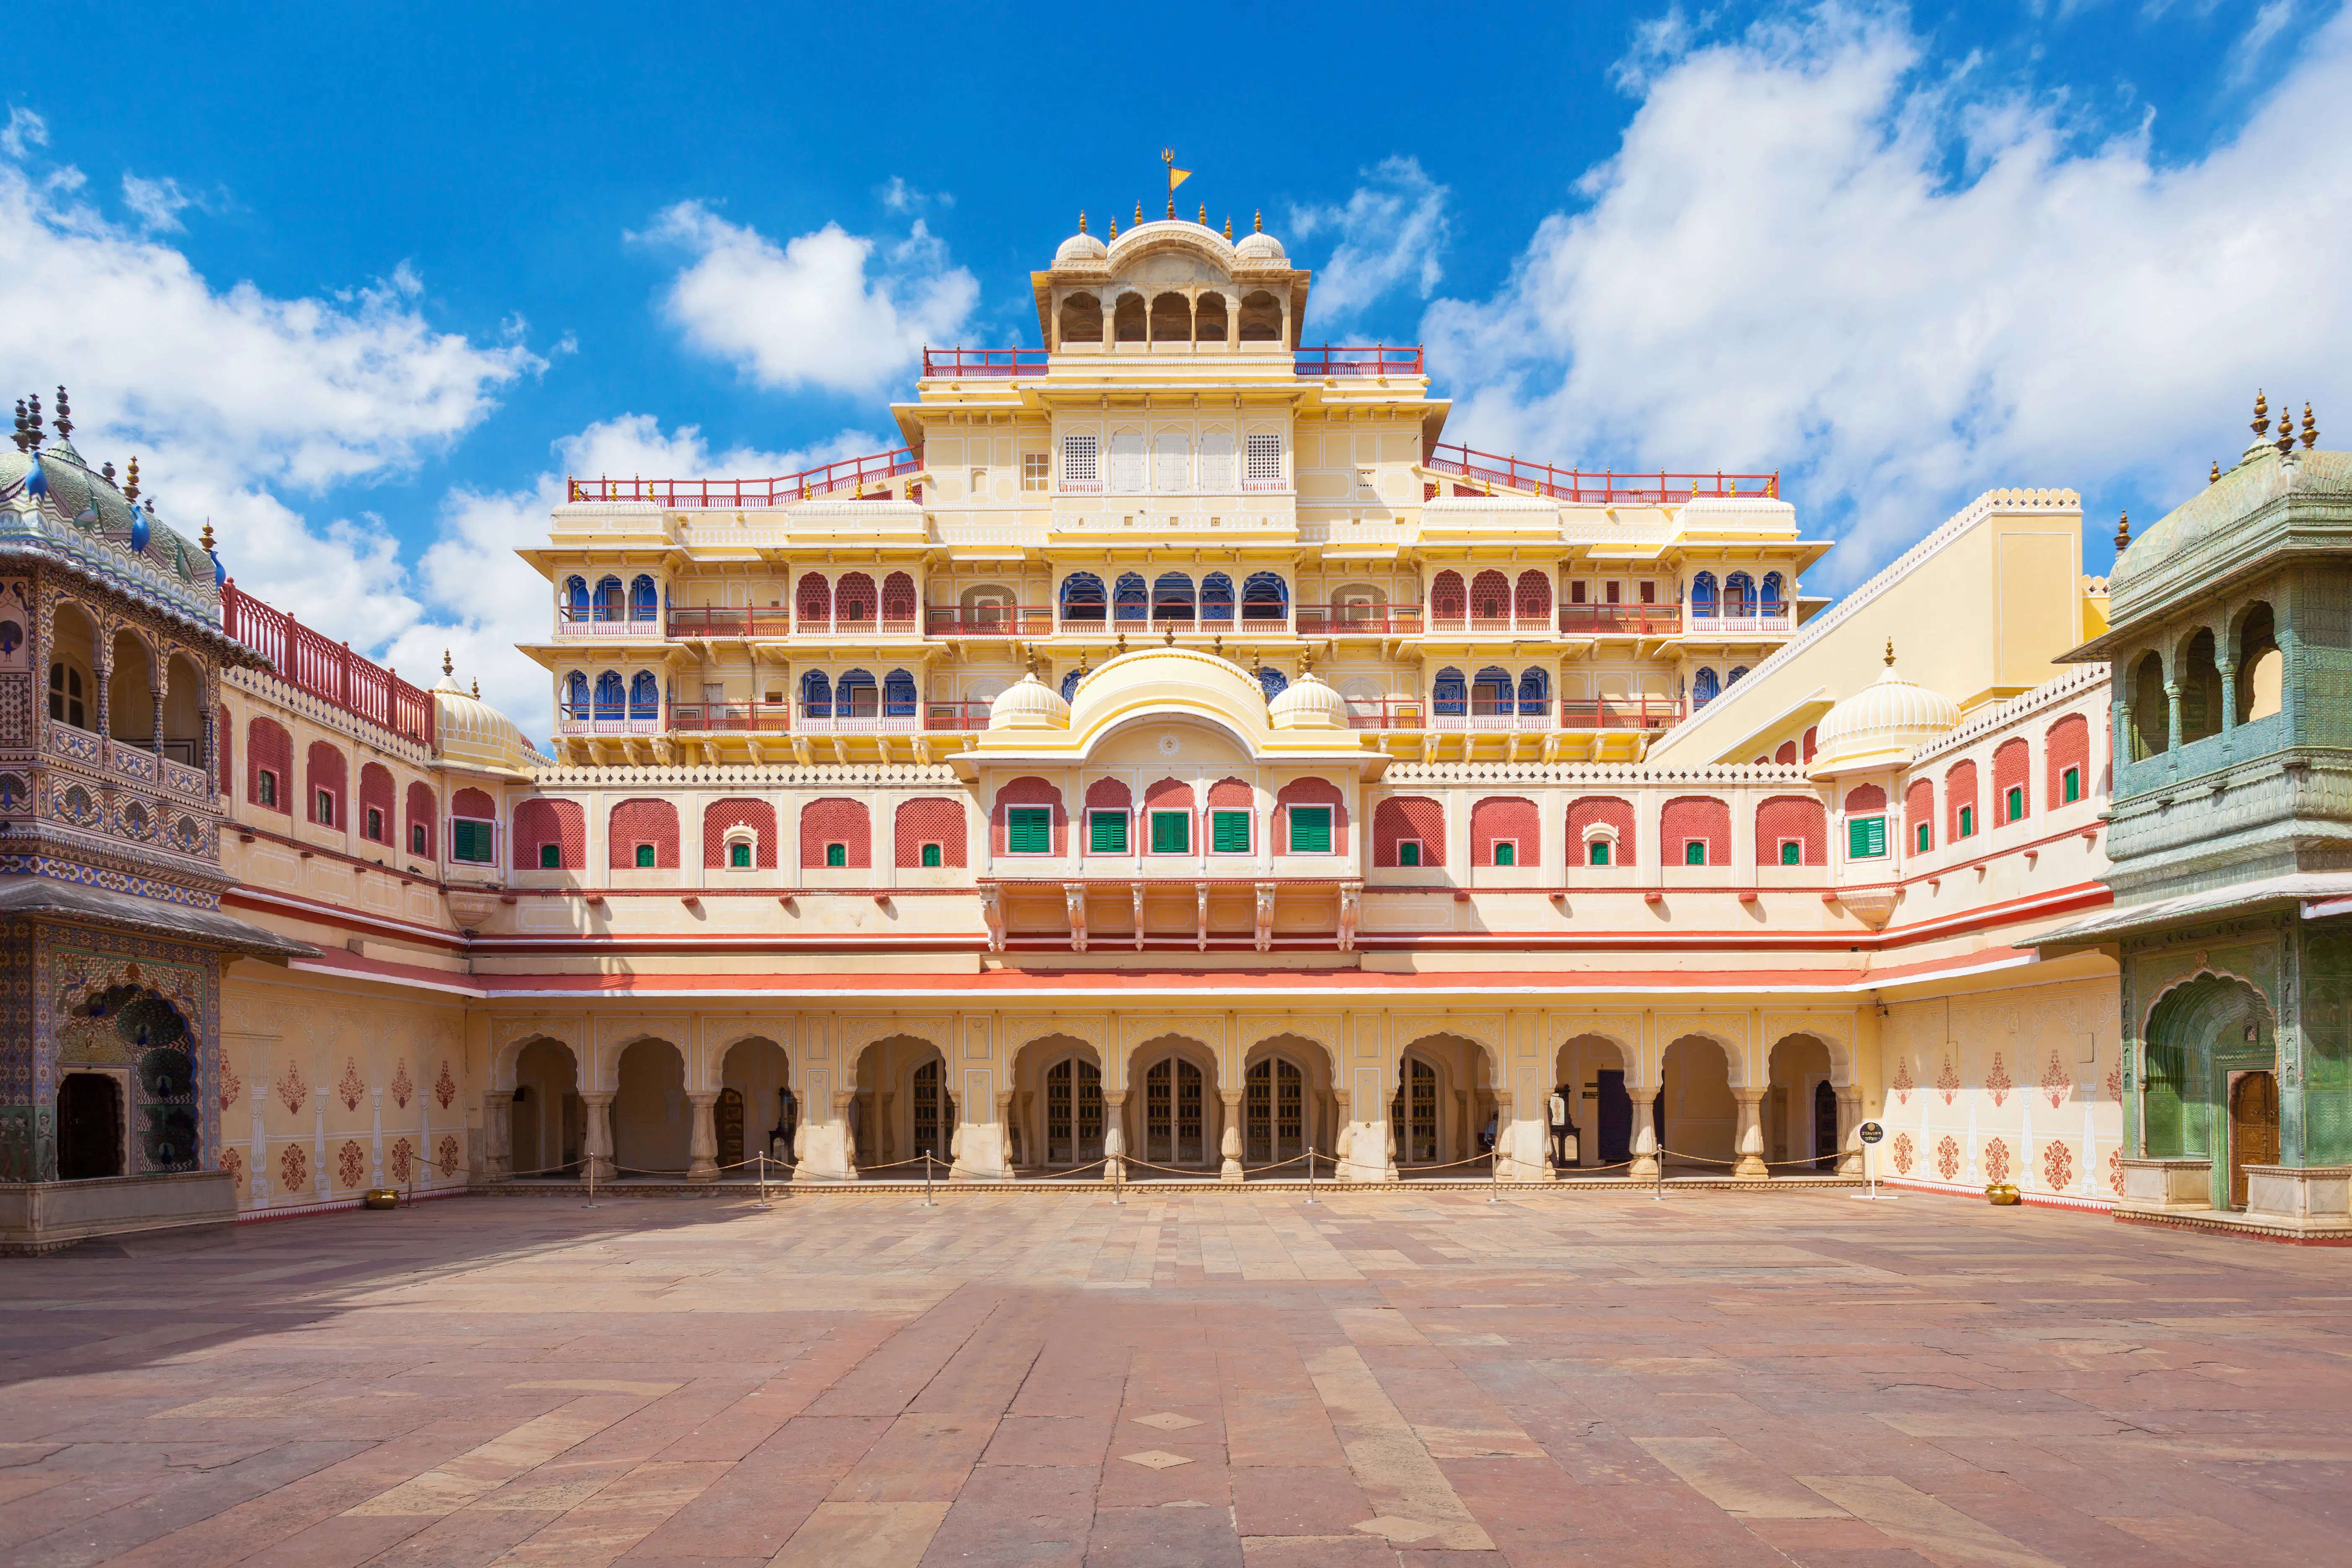 राजस्थान के इस शाही और आलीशान महल में देशी ही नहीं विदेशी पर्यटकों का भी सालभर लगा रहता हैं तांता, देखें वायरल वीडियो में खूबसूरत नजारे